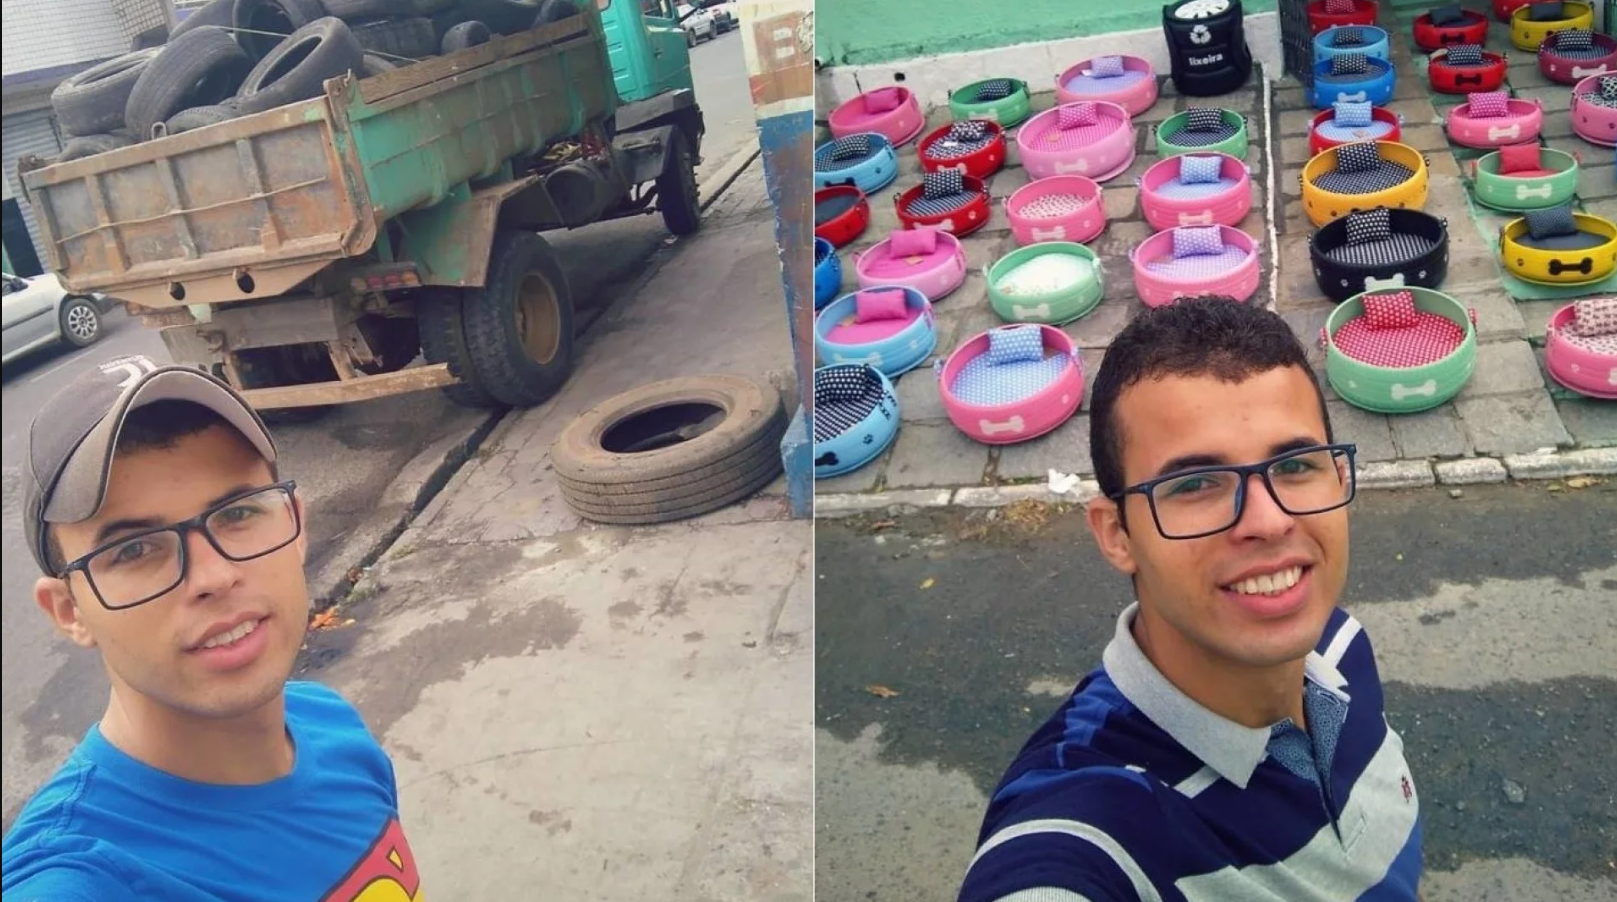 Un tânăr de doar 23 ani transformă anvelopele vechi în ceva frumos și util, ajutând astfel planeta.